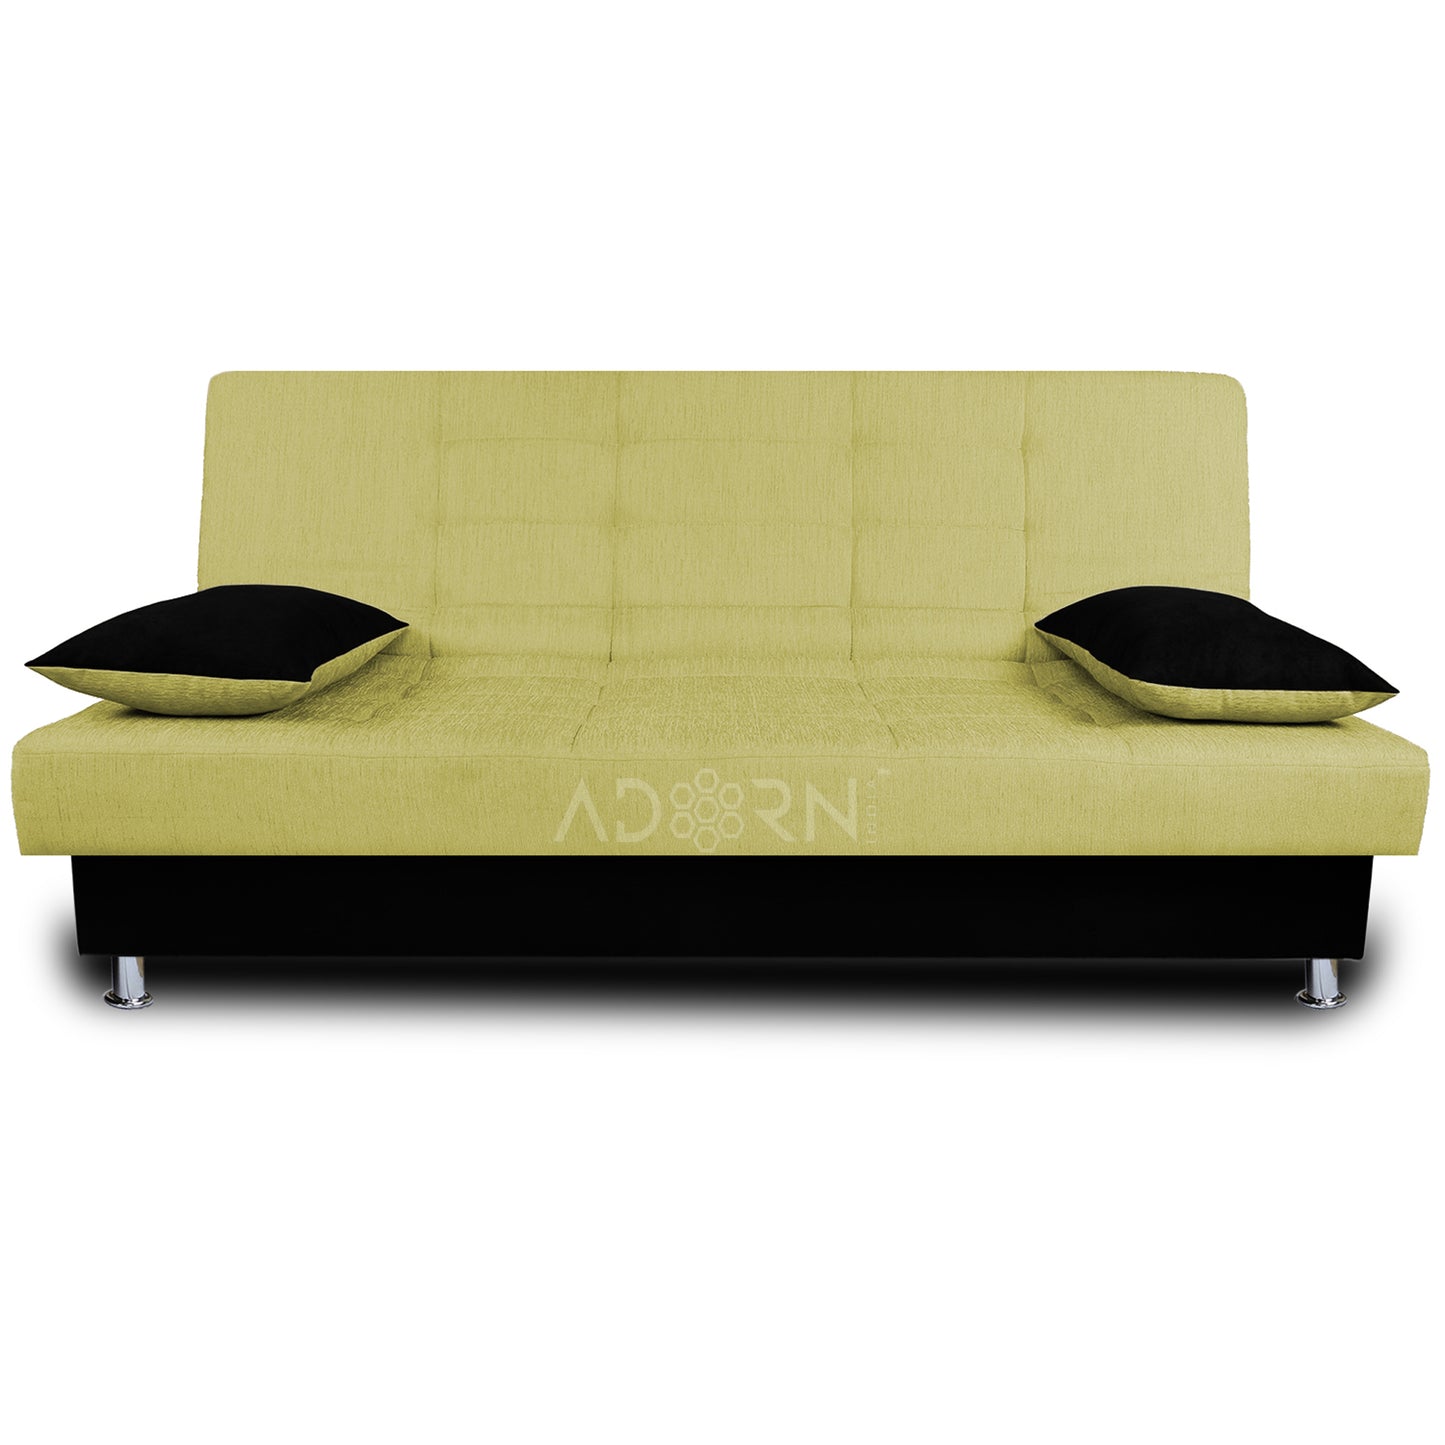 Adorn India Alyssum 3 seater sofa cum bed (green & black)